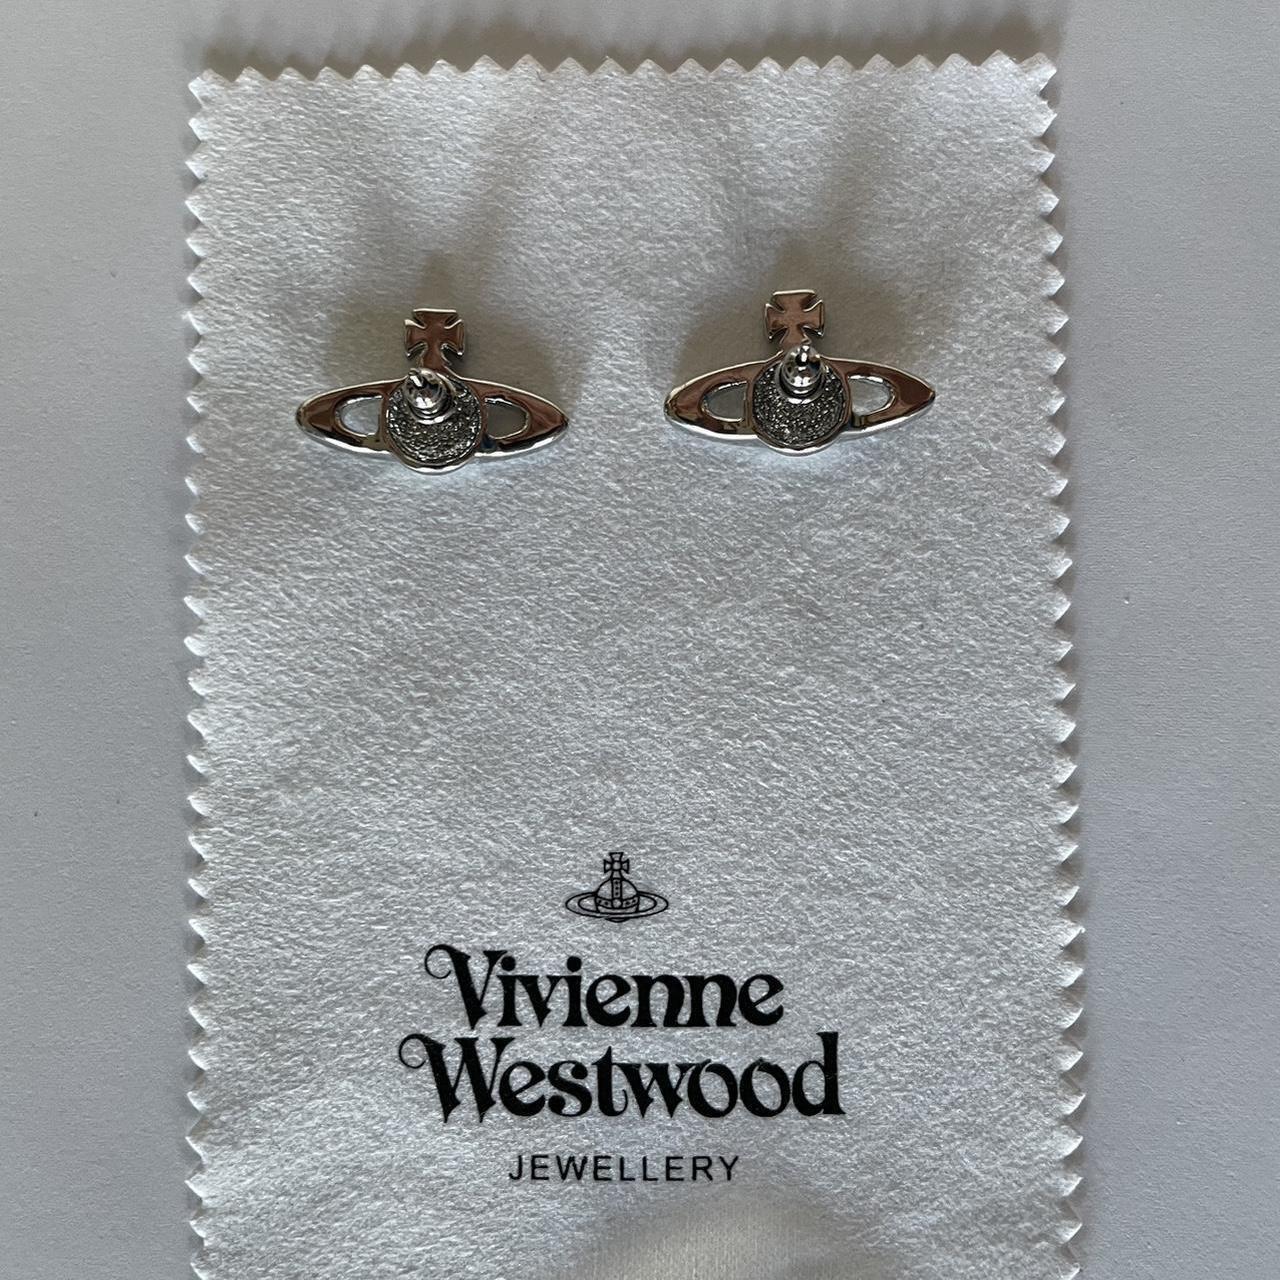 Vivienne Westwood Saturn Style Earrings!! Sooo... - Depop